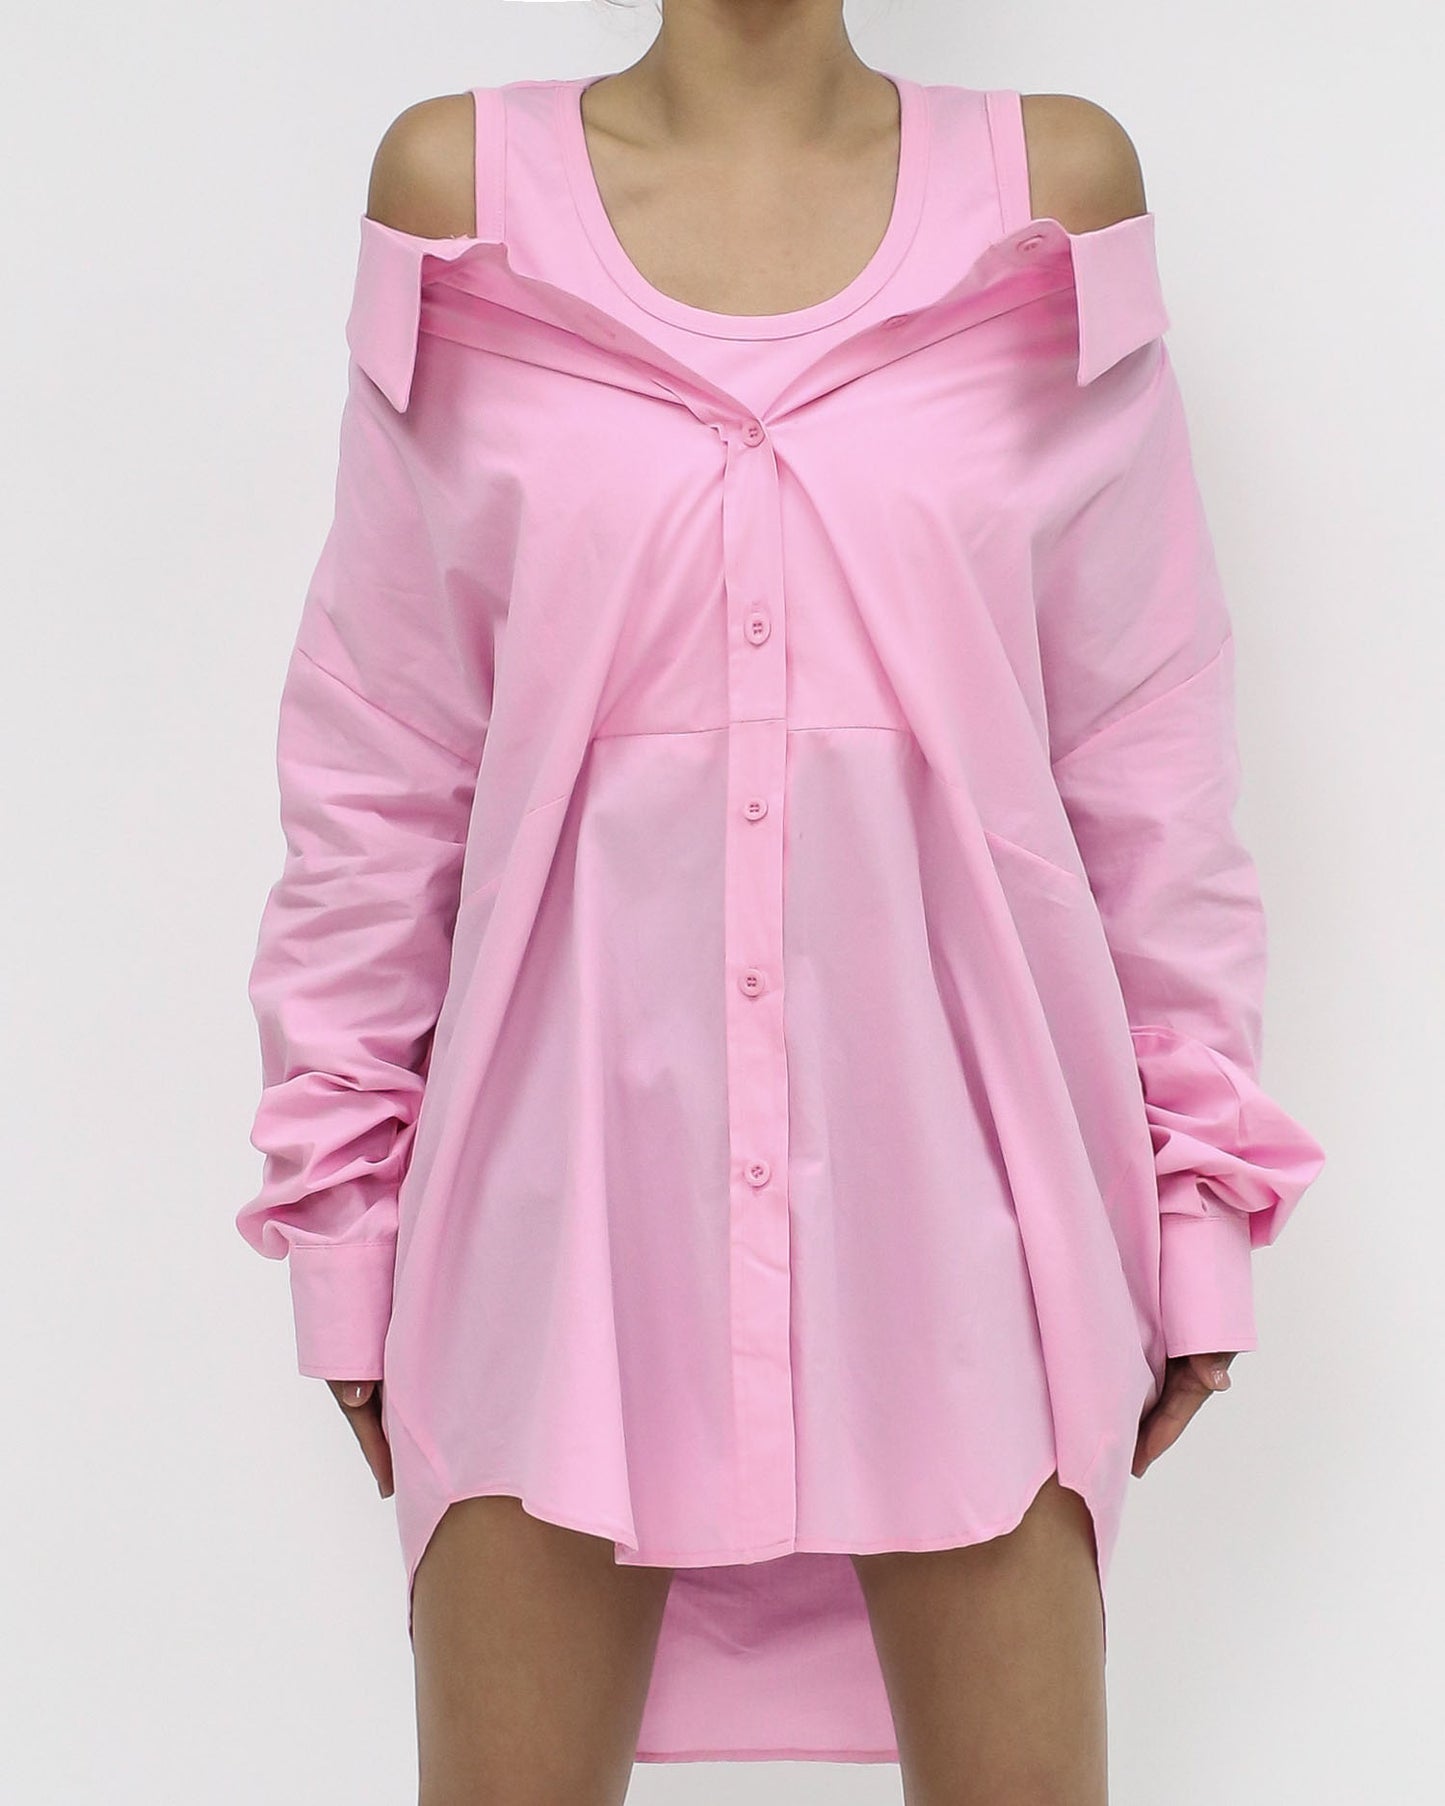 pink vest off shoulders shirt